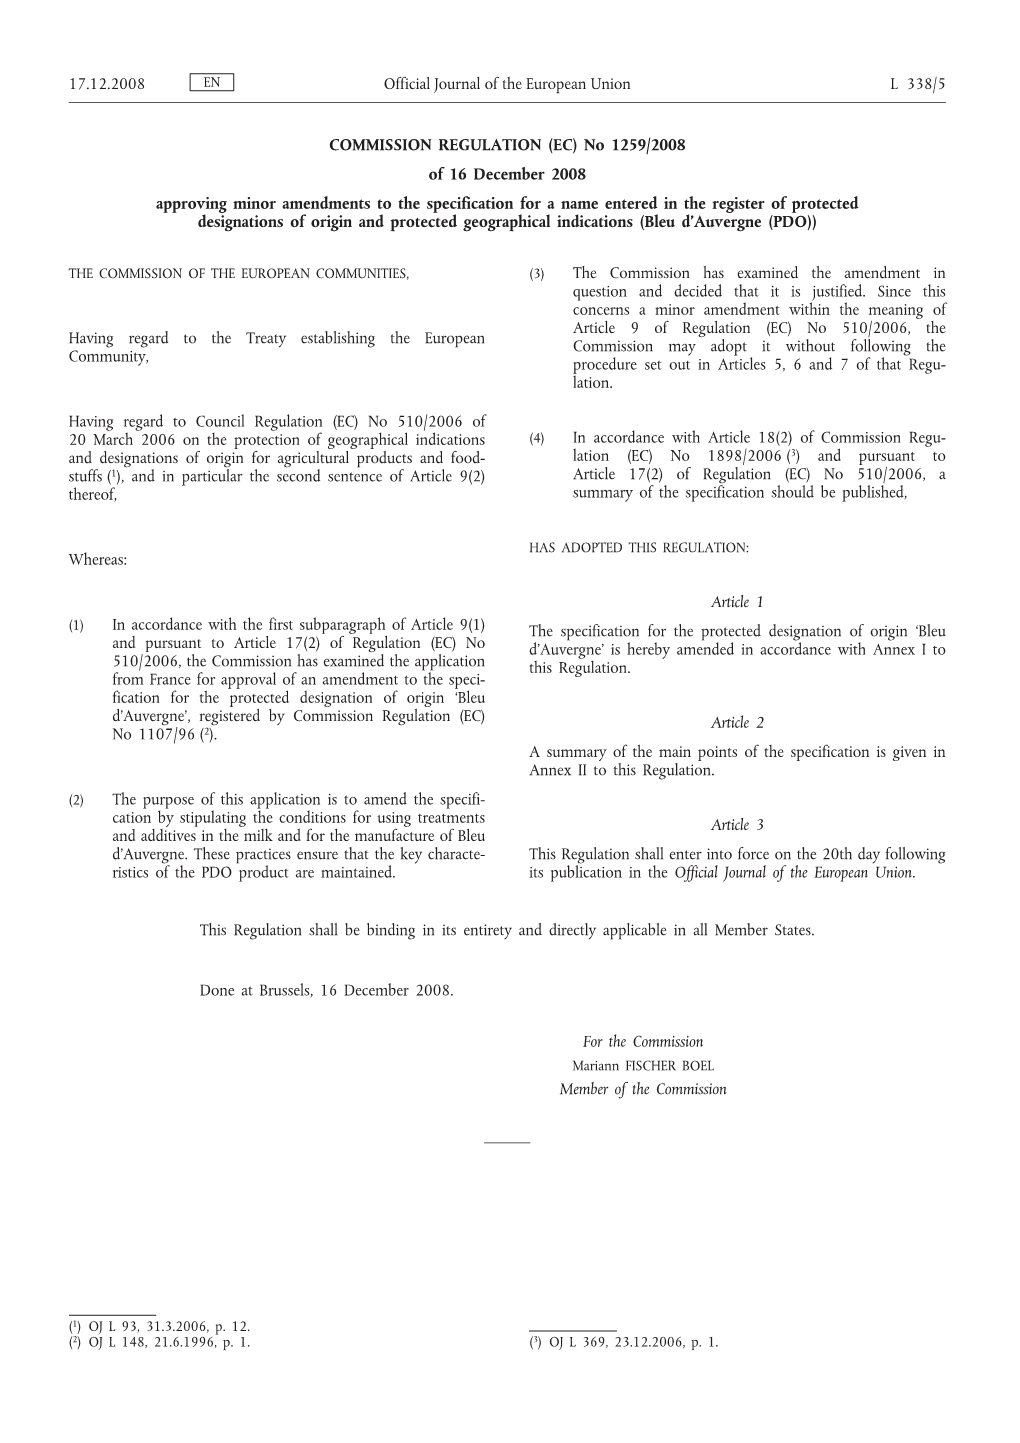 COMMISSION REGULATION (EC) No 1259/2008 of 16 December 2008